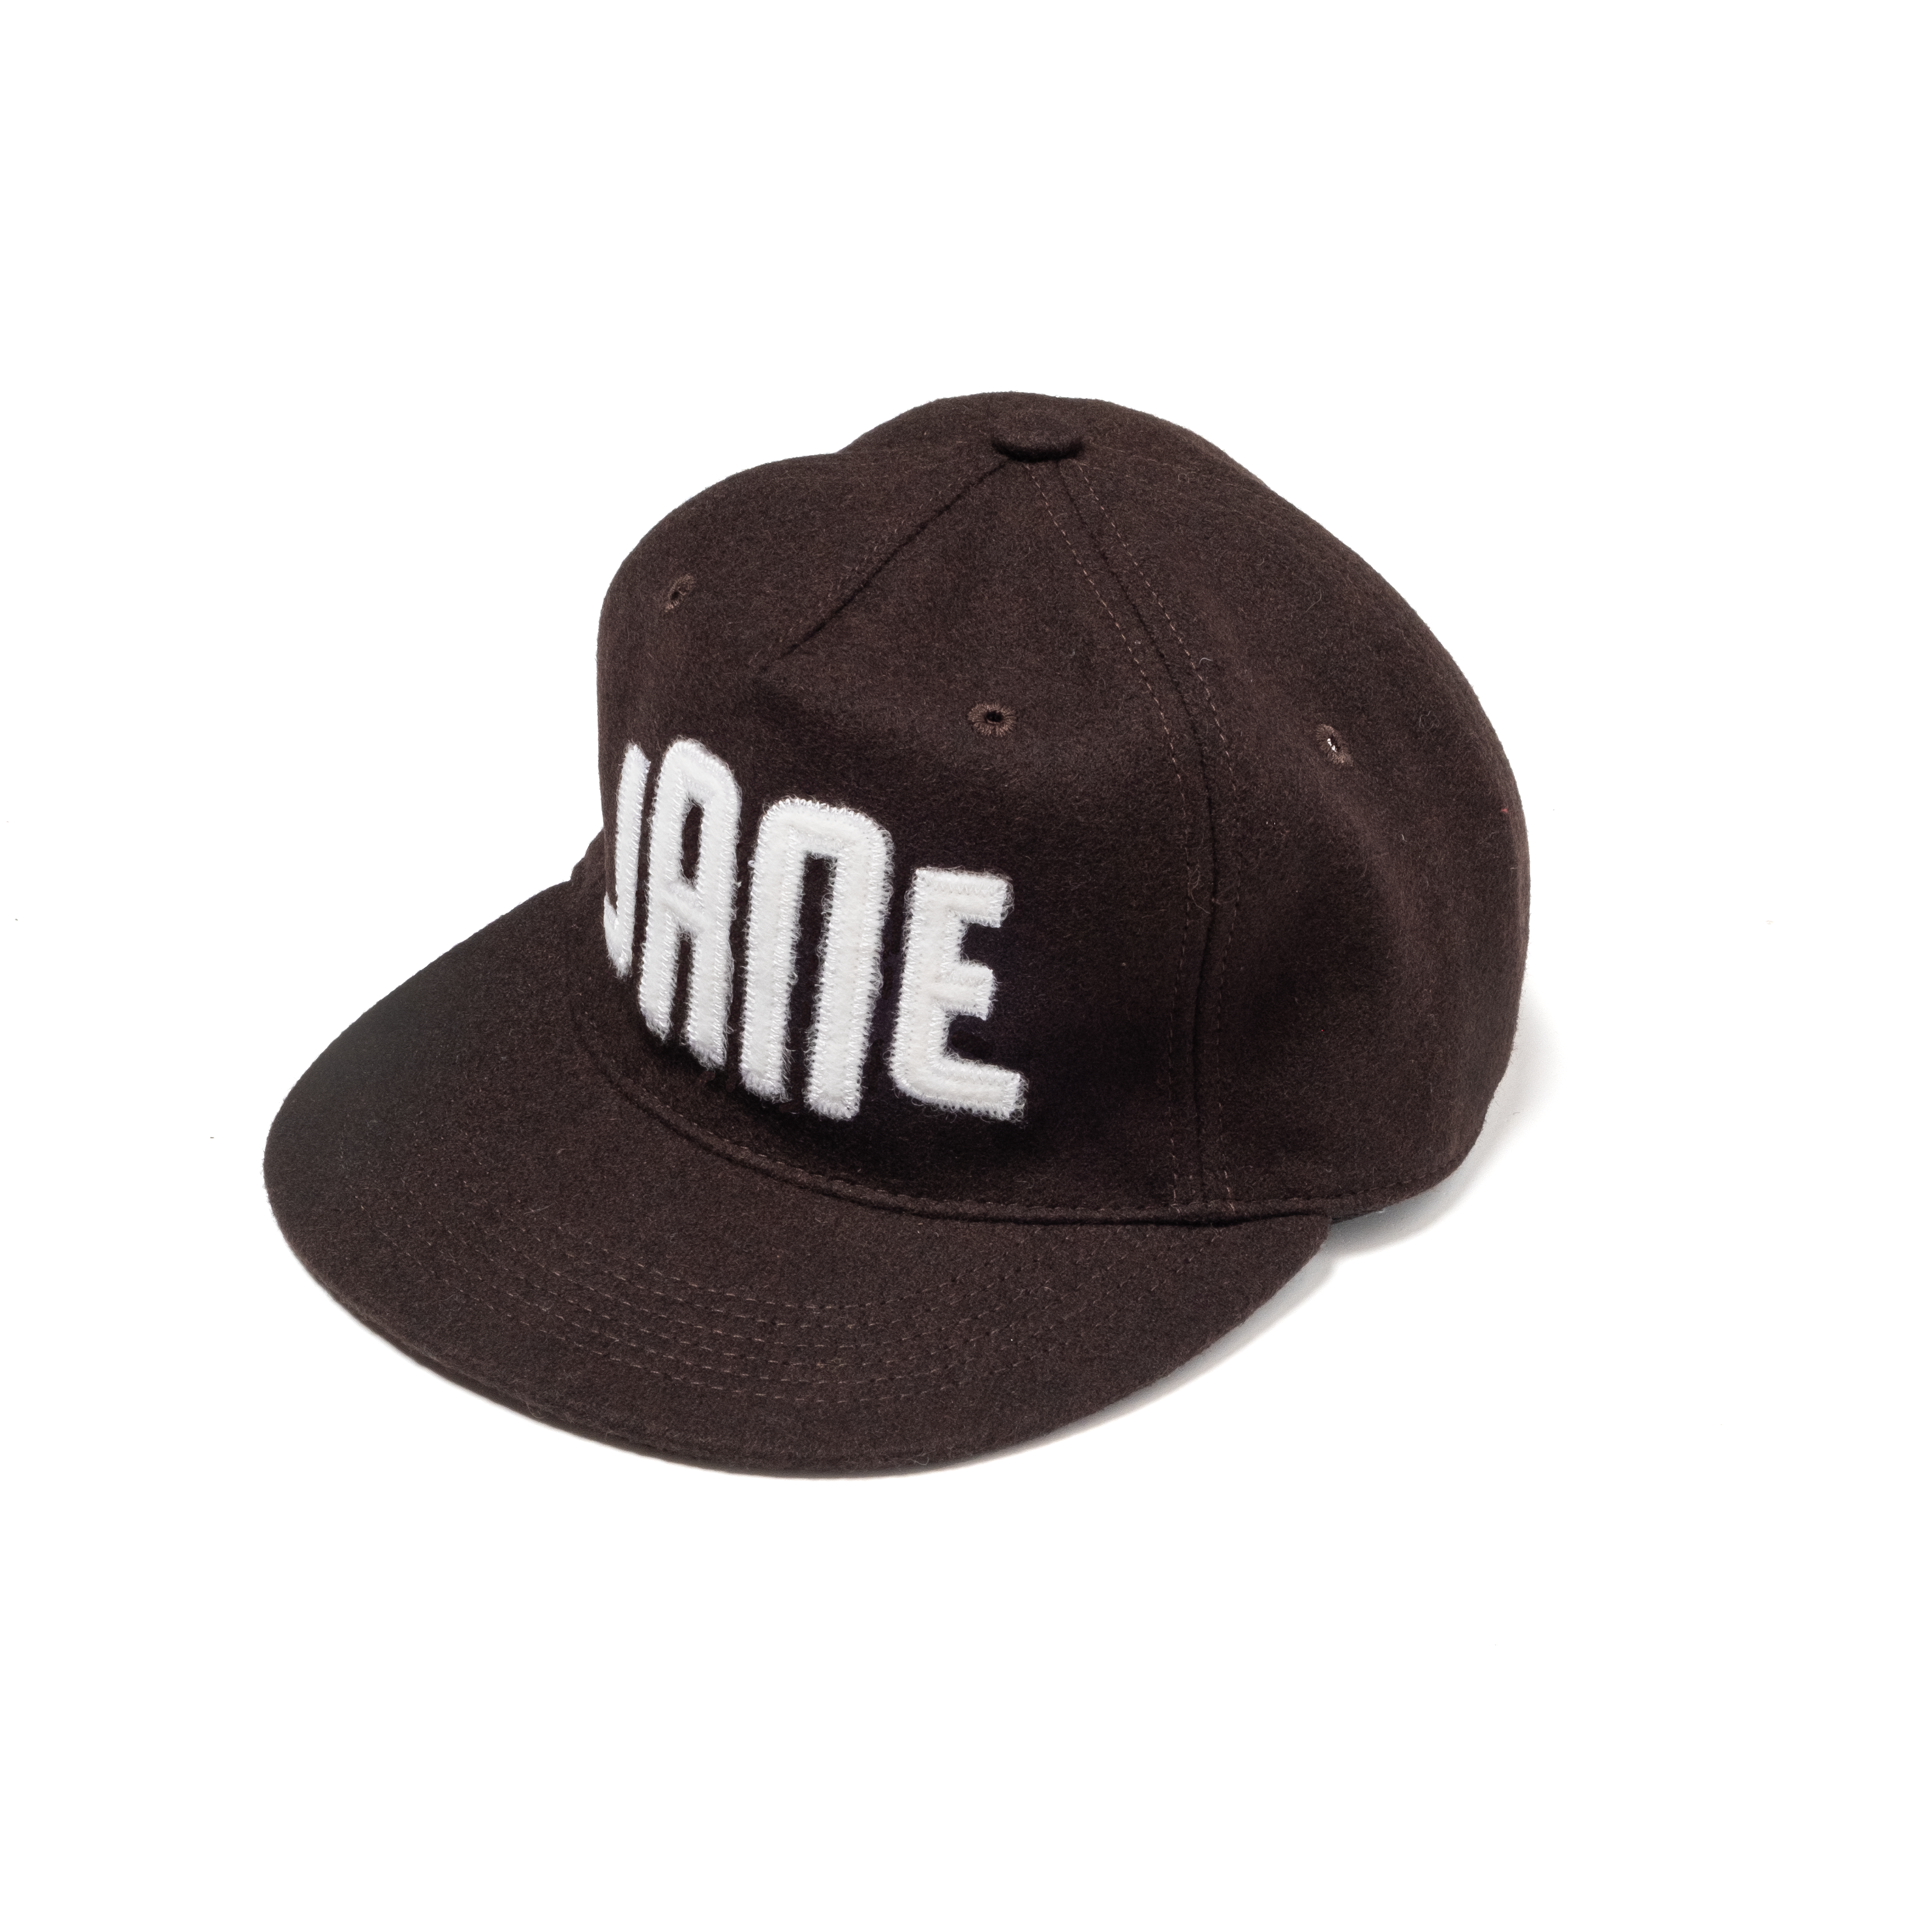 JANE Ballpark Hat - Unstructured - Brown/White